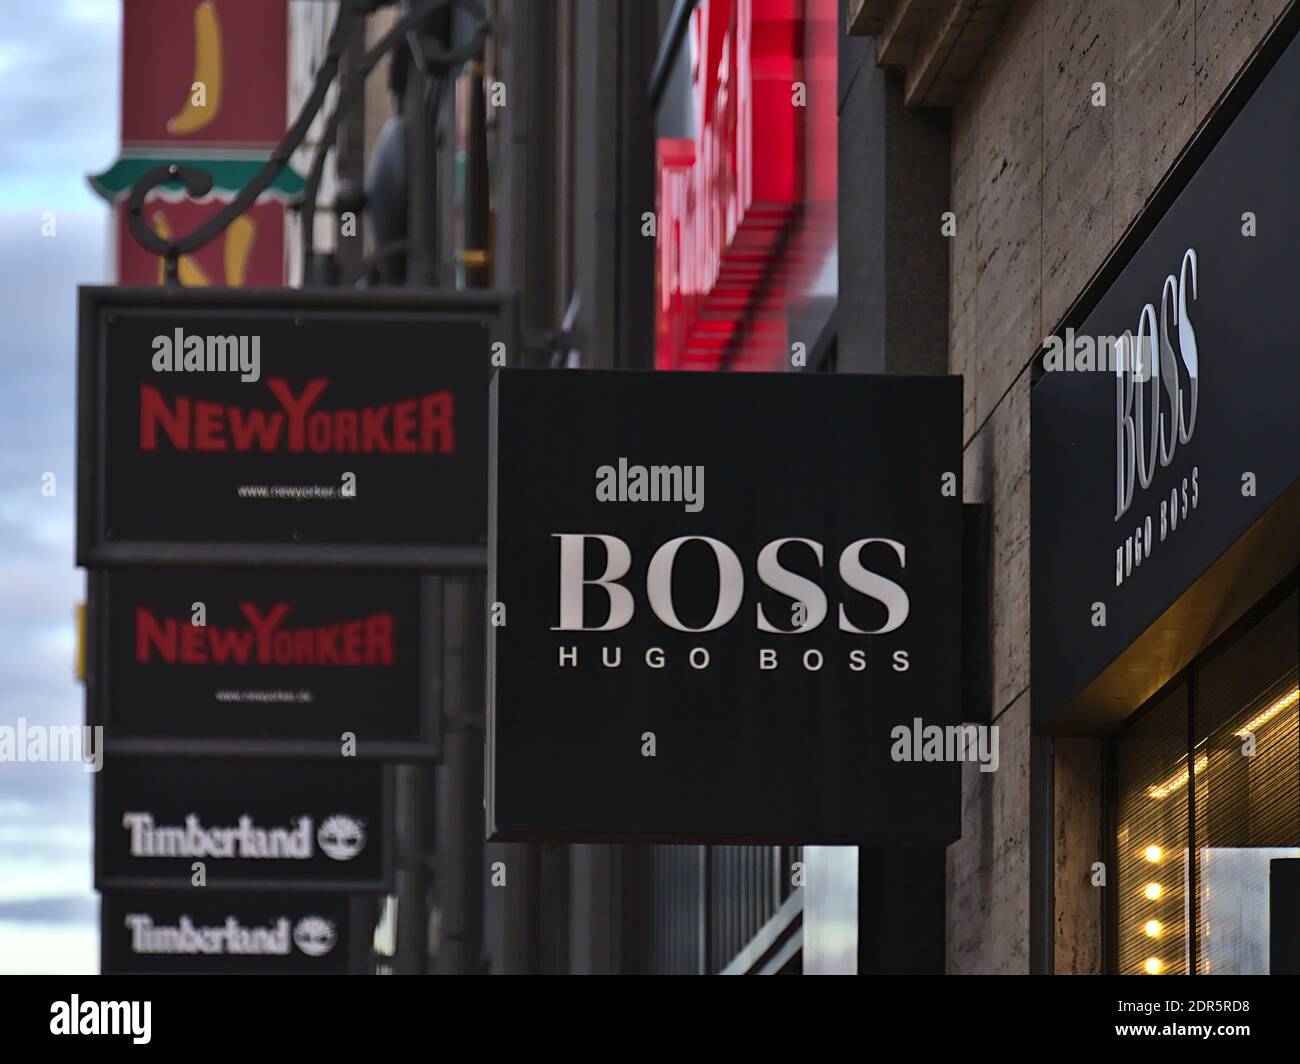 Cartello pubblicitario sopra il negozio di abbigliamento tedesco al dettaglio marchio Hugo Boss in via shopping Königstraße con altri segni in background (New Yorker). Foto Stock